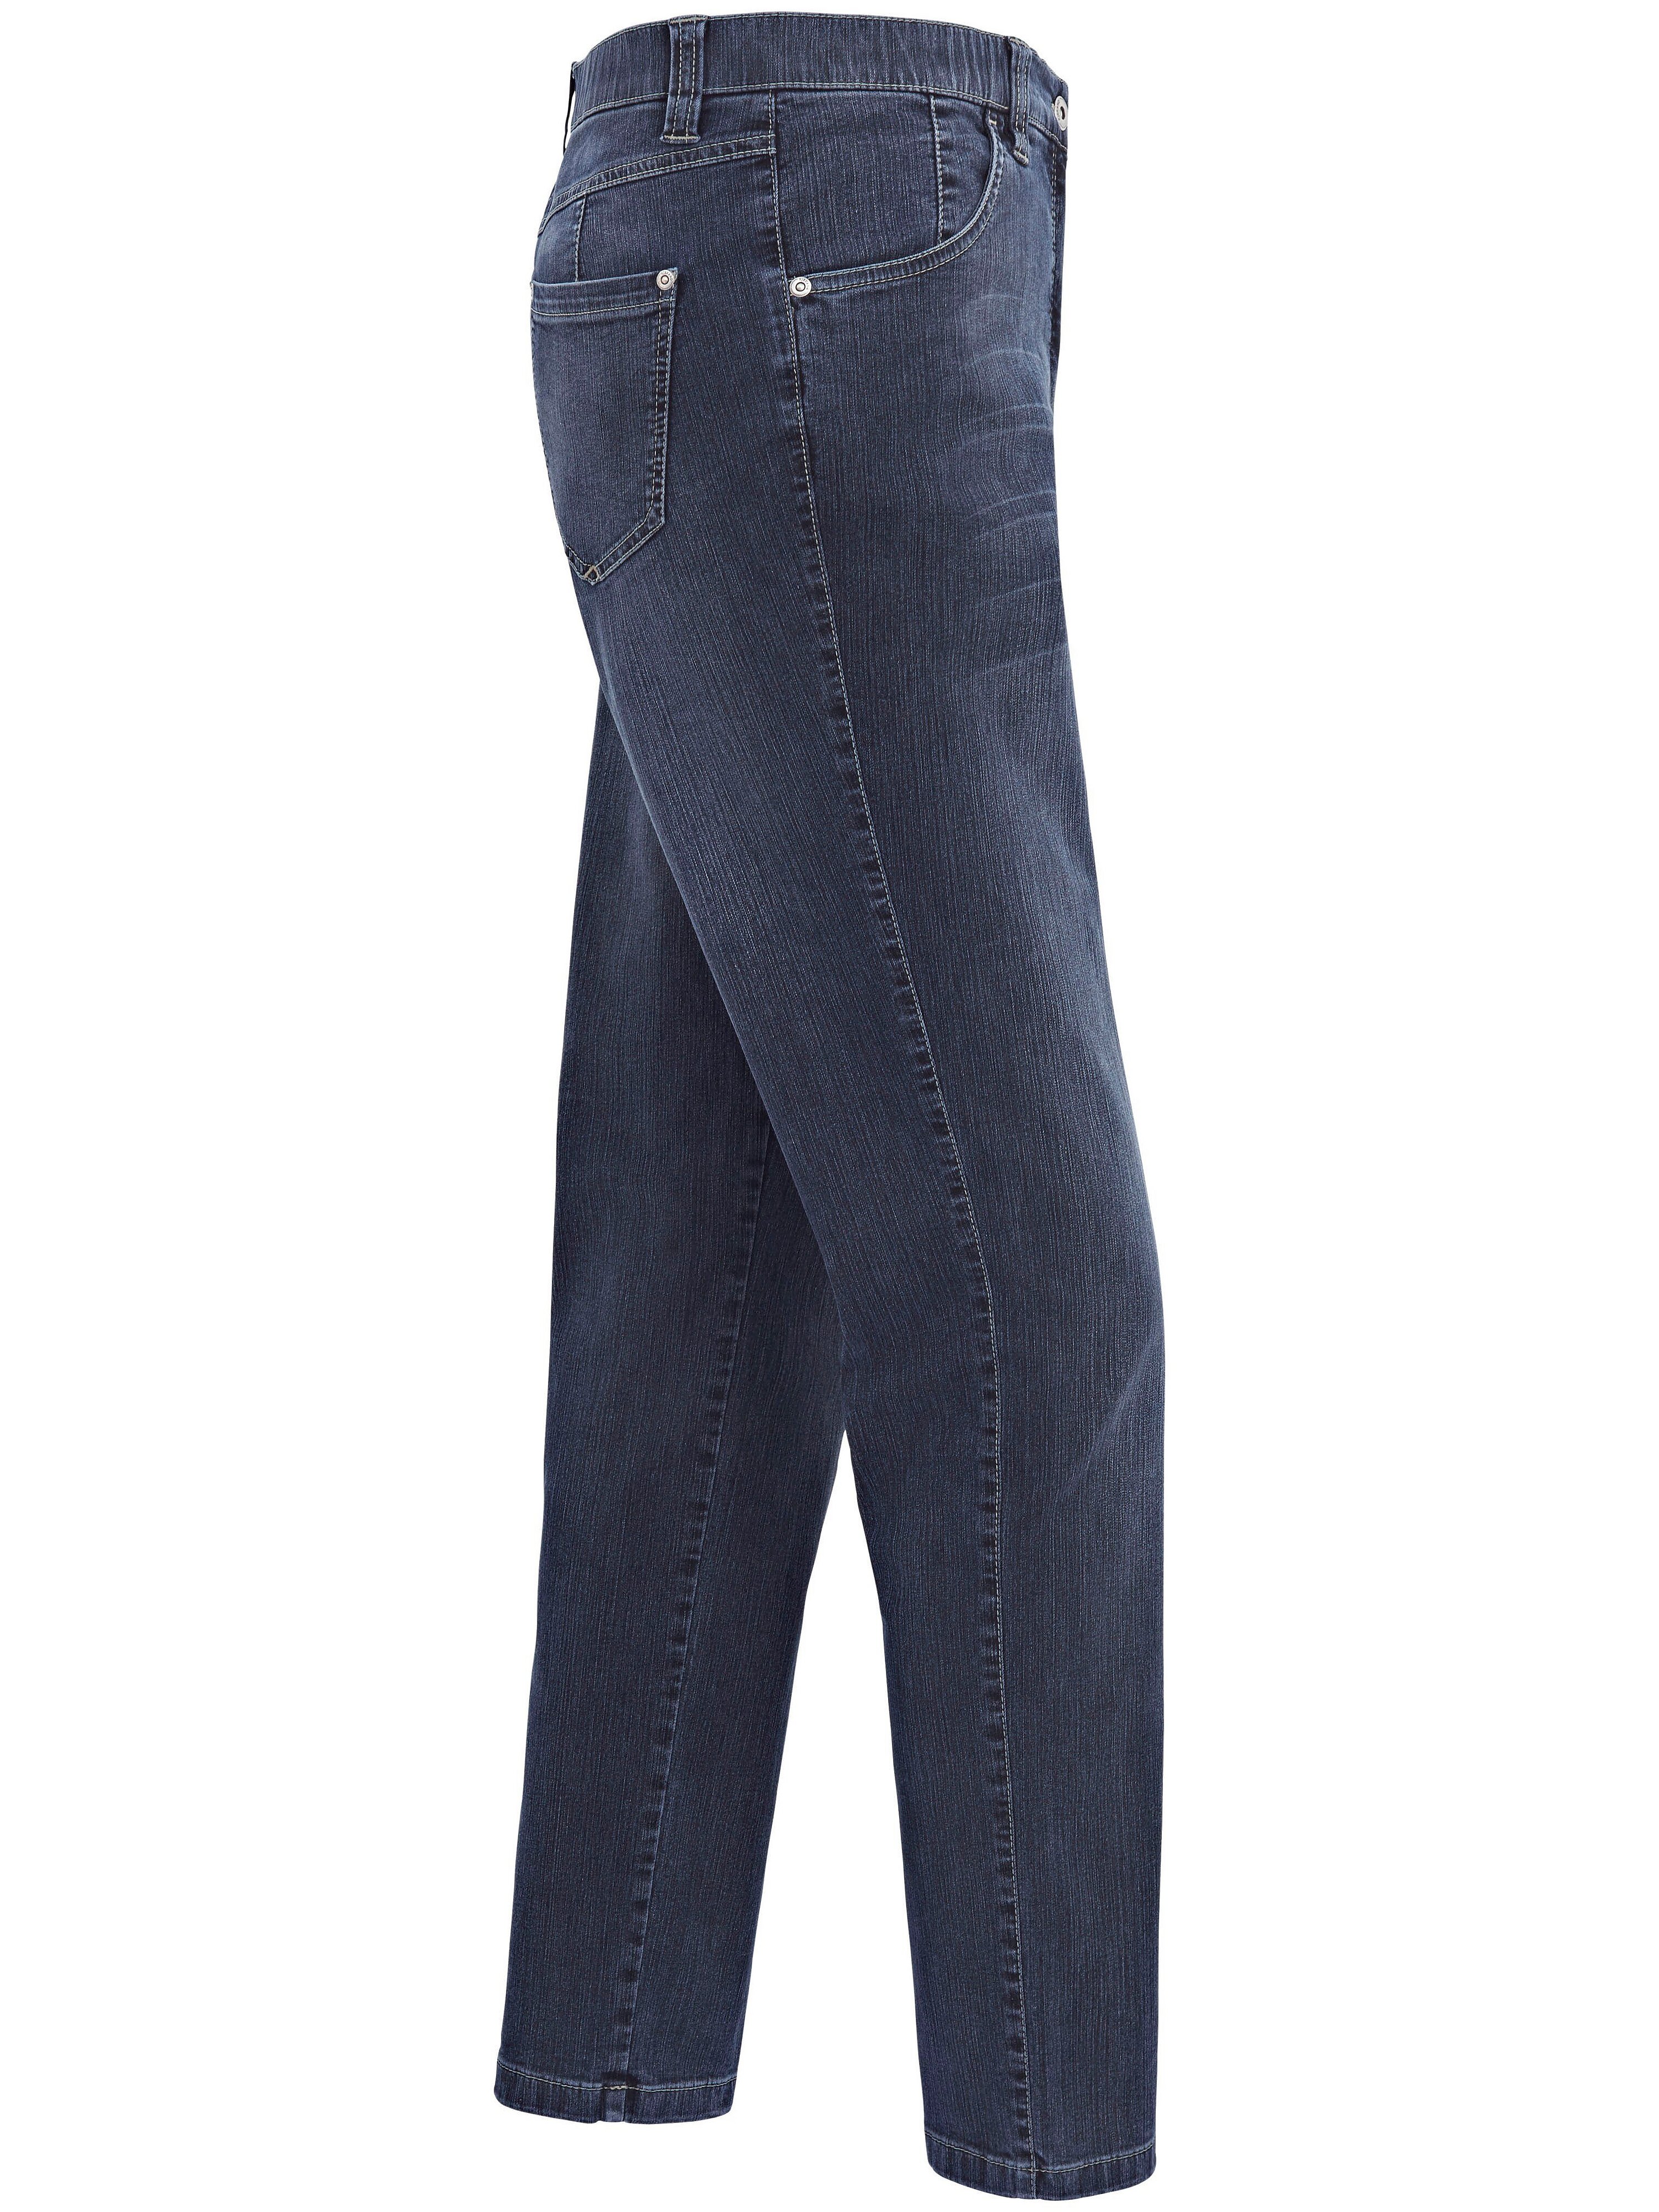 Jeans - model BETTY CS Fra KjBrand denim